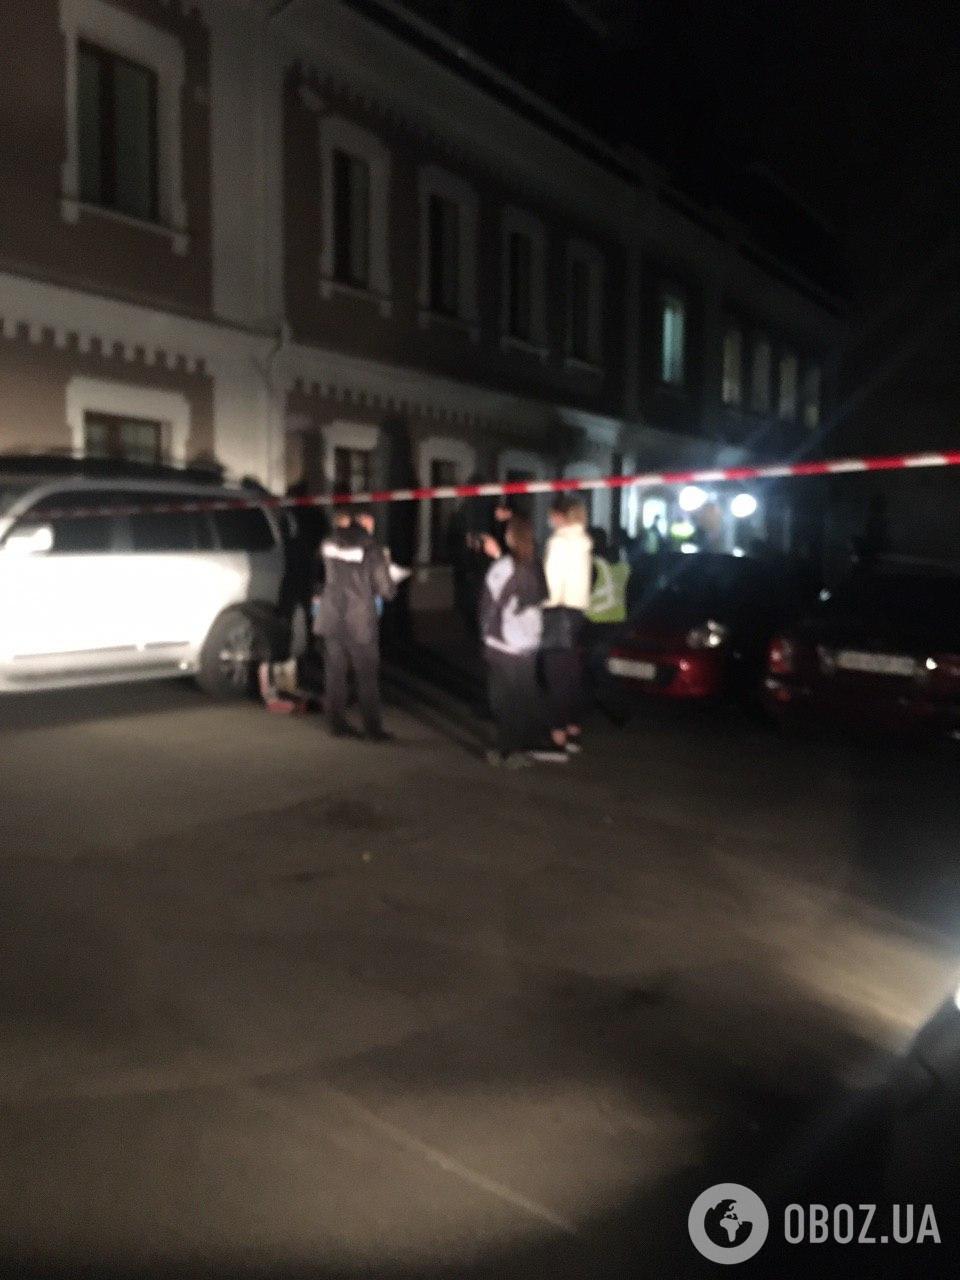 Правоохранители завершили осмотр авто Давыденко